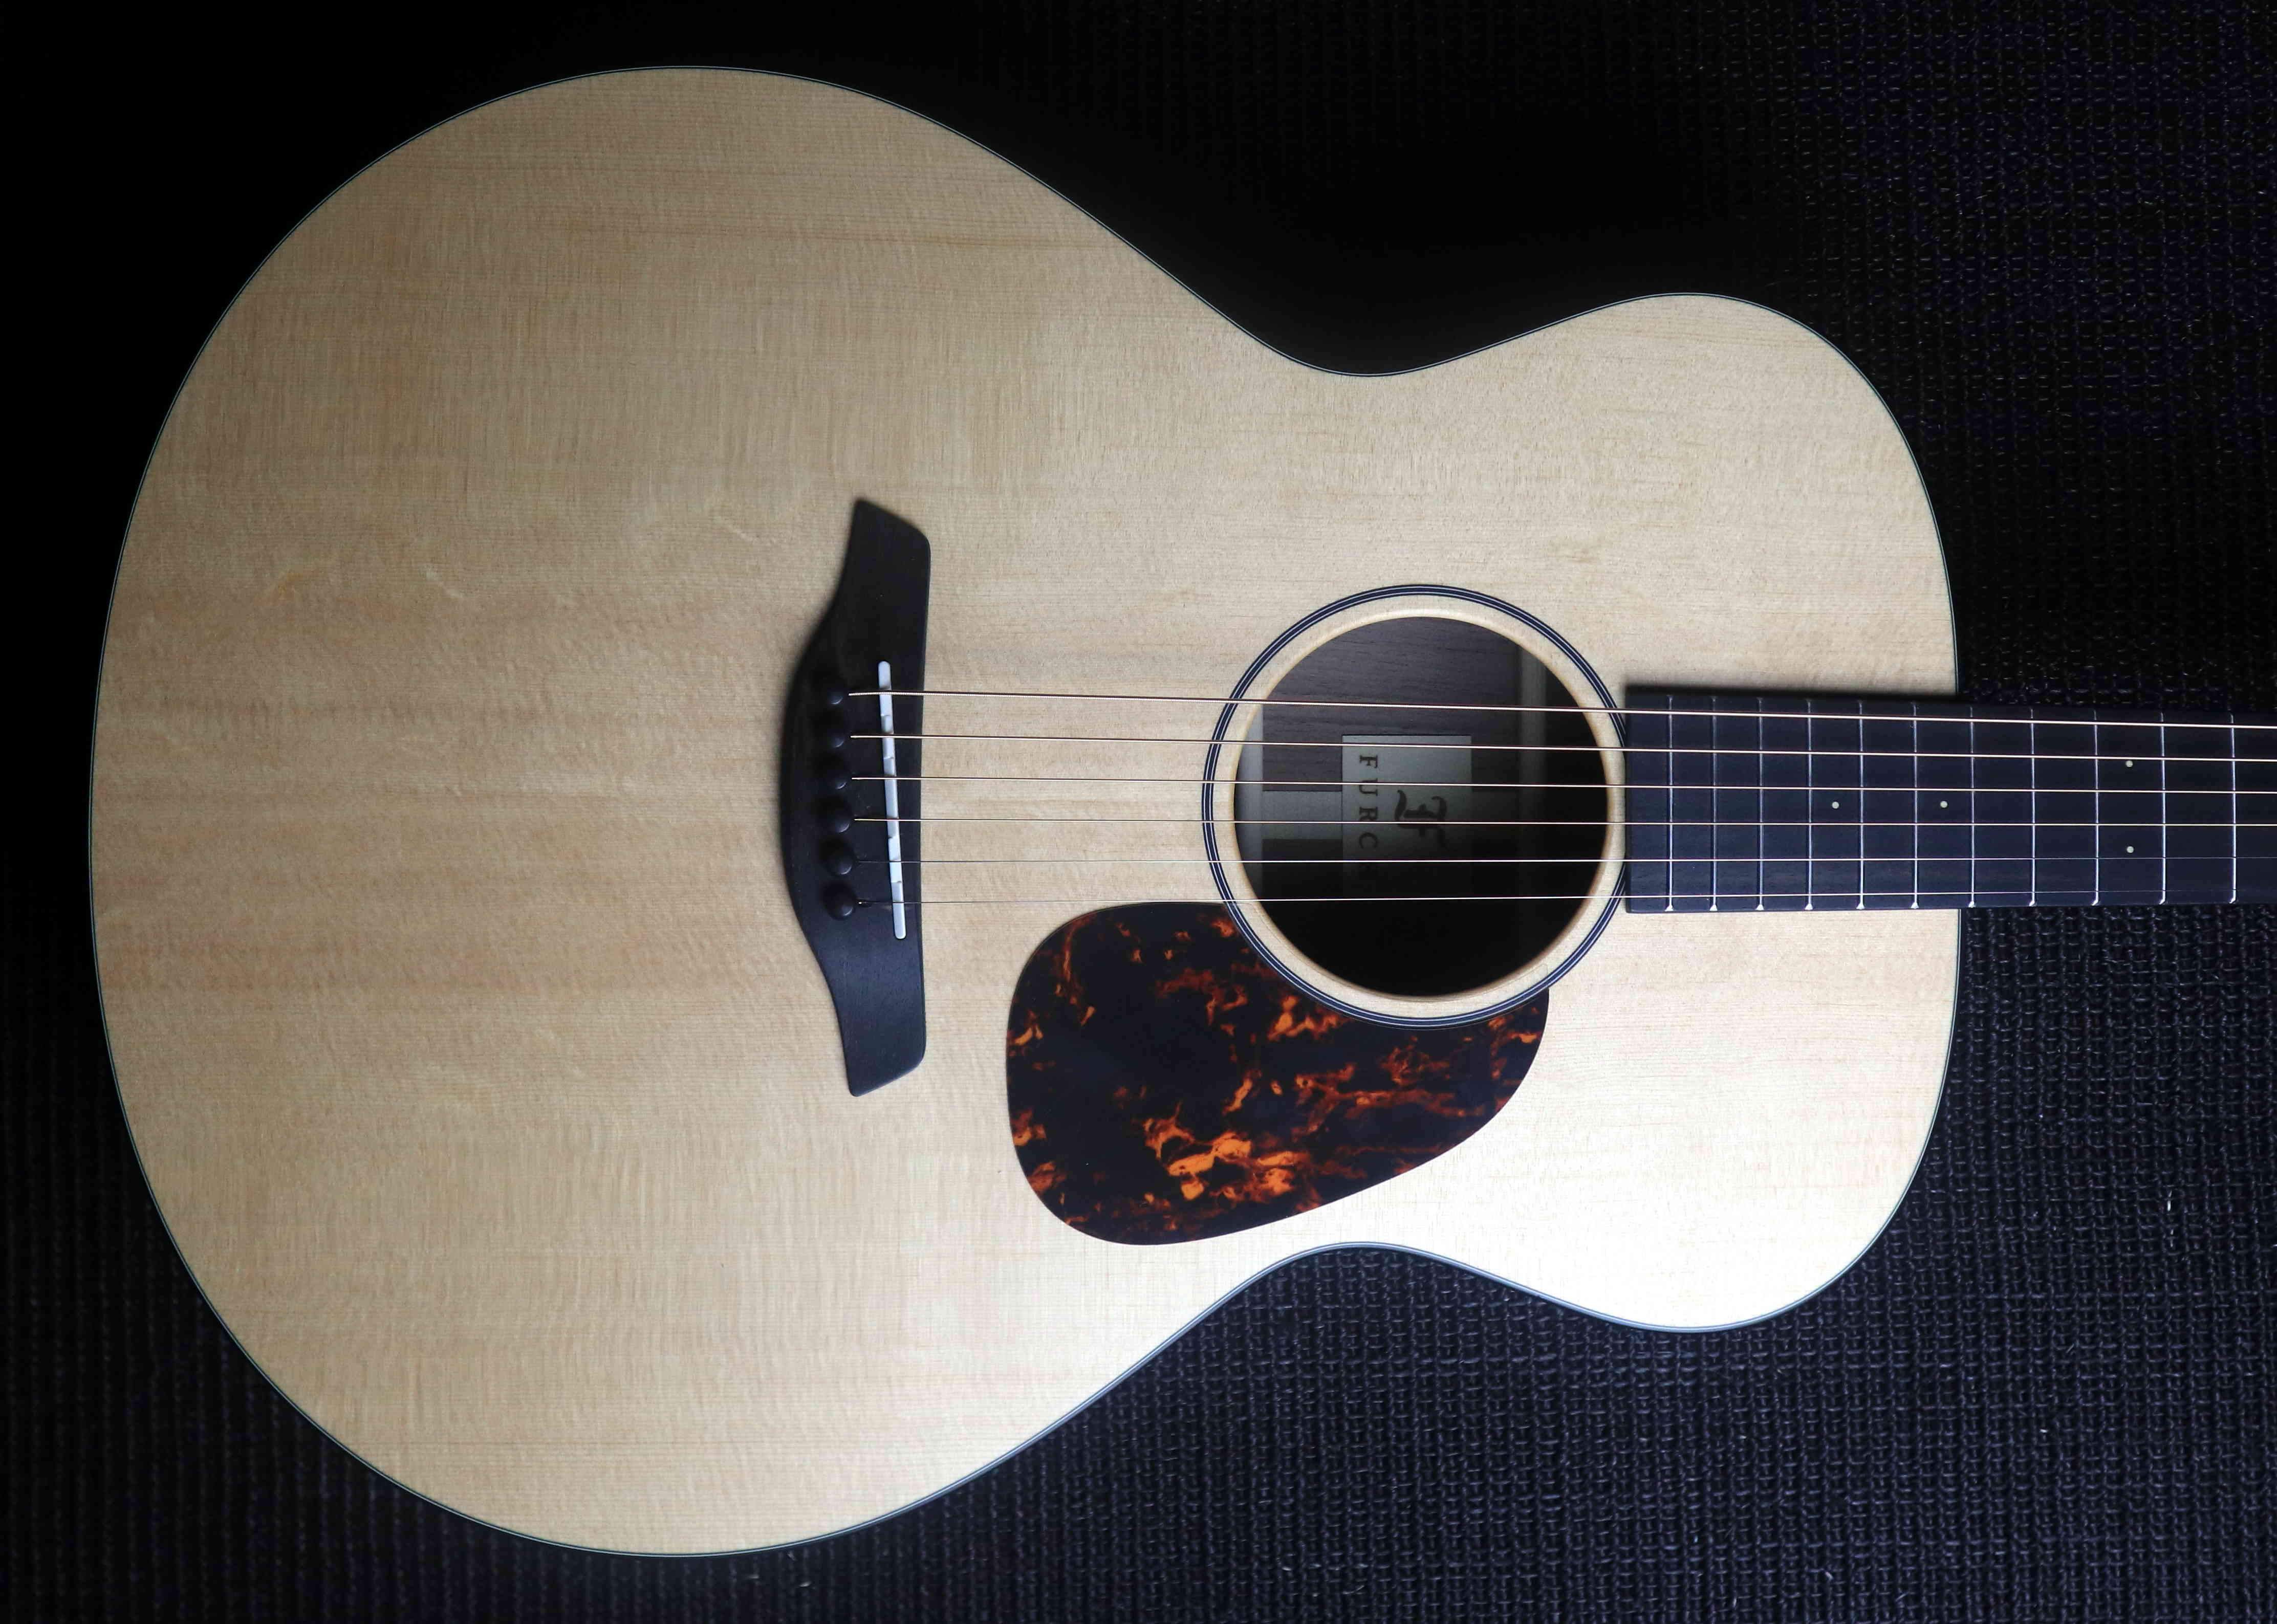 Furch Blue G SW (Spruce / Walnut) Acoustic Guitar, Acoustic Guitar for sale at Richards Guitars.